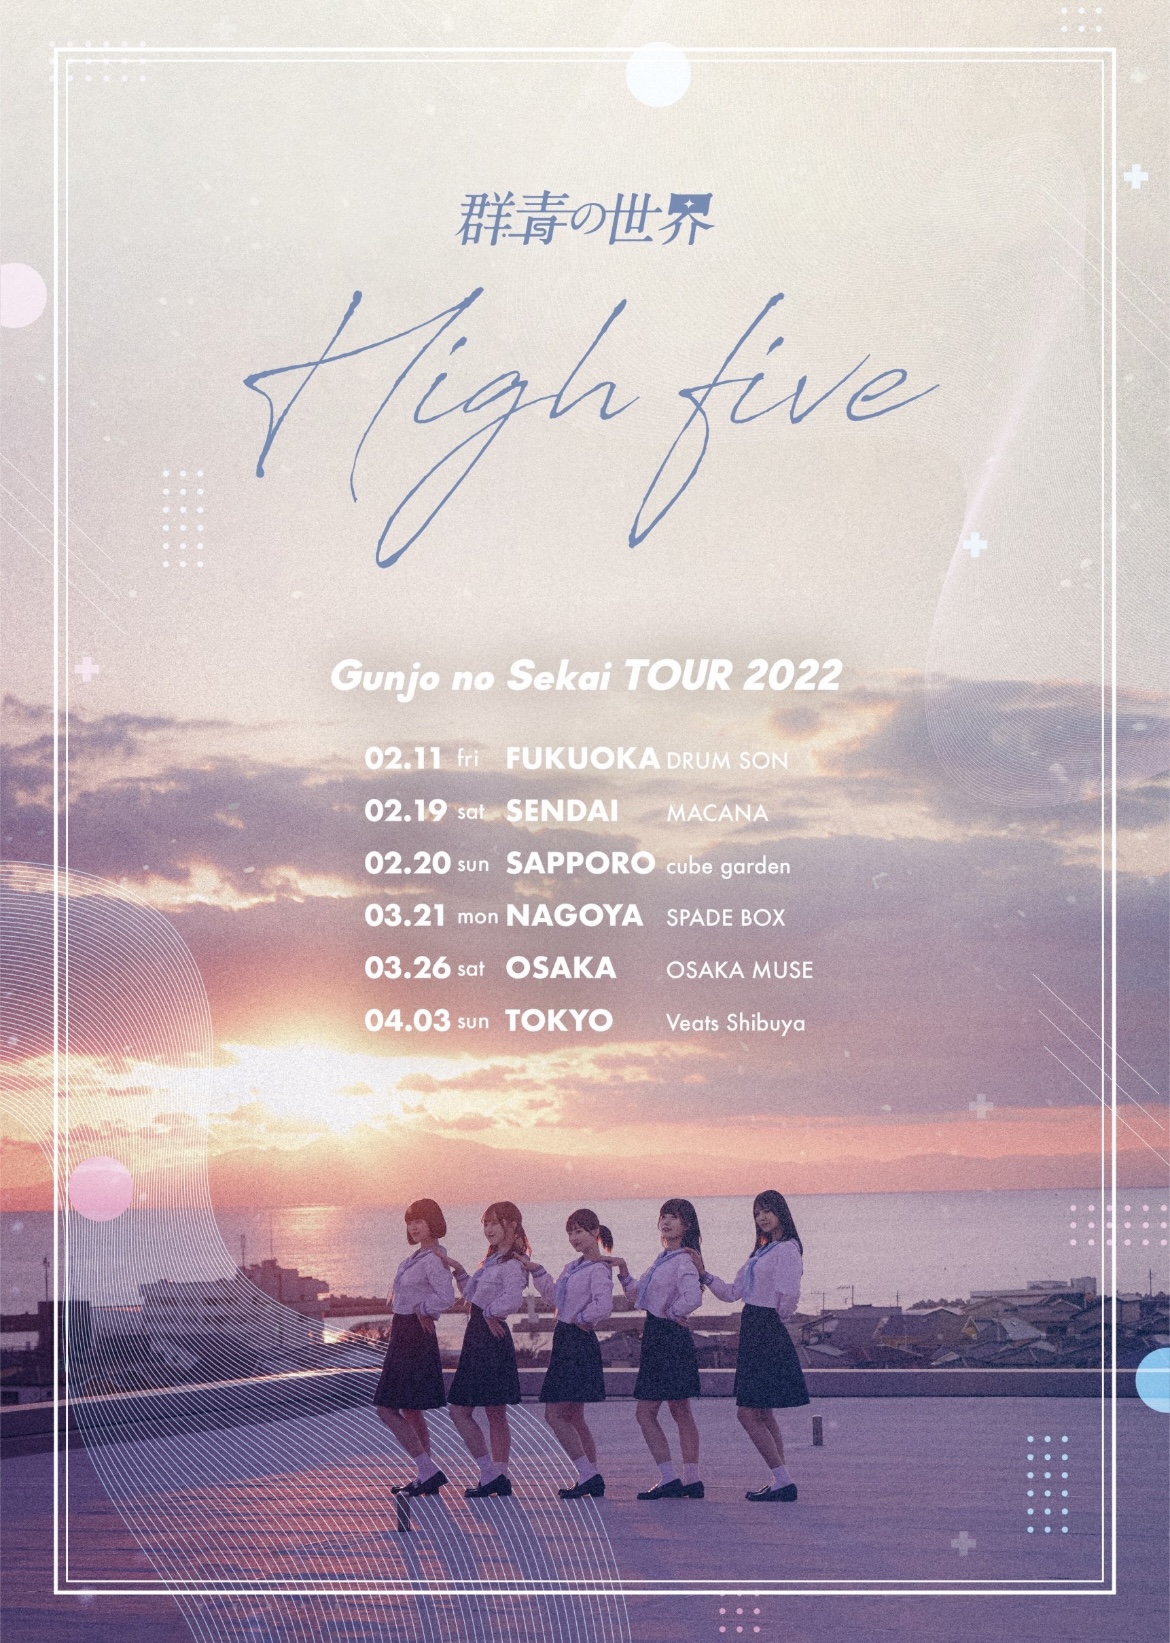 群青の世界 全国ツアー「High five」札幌公演